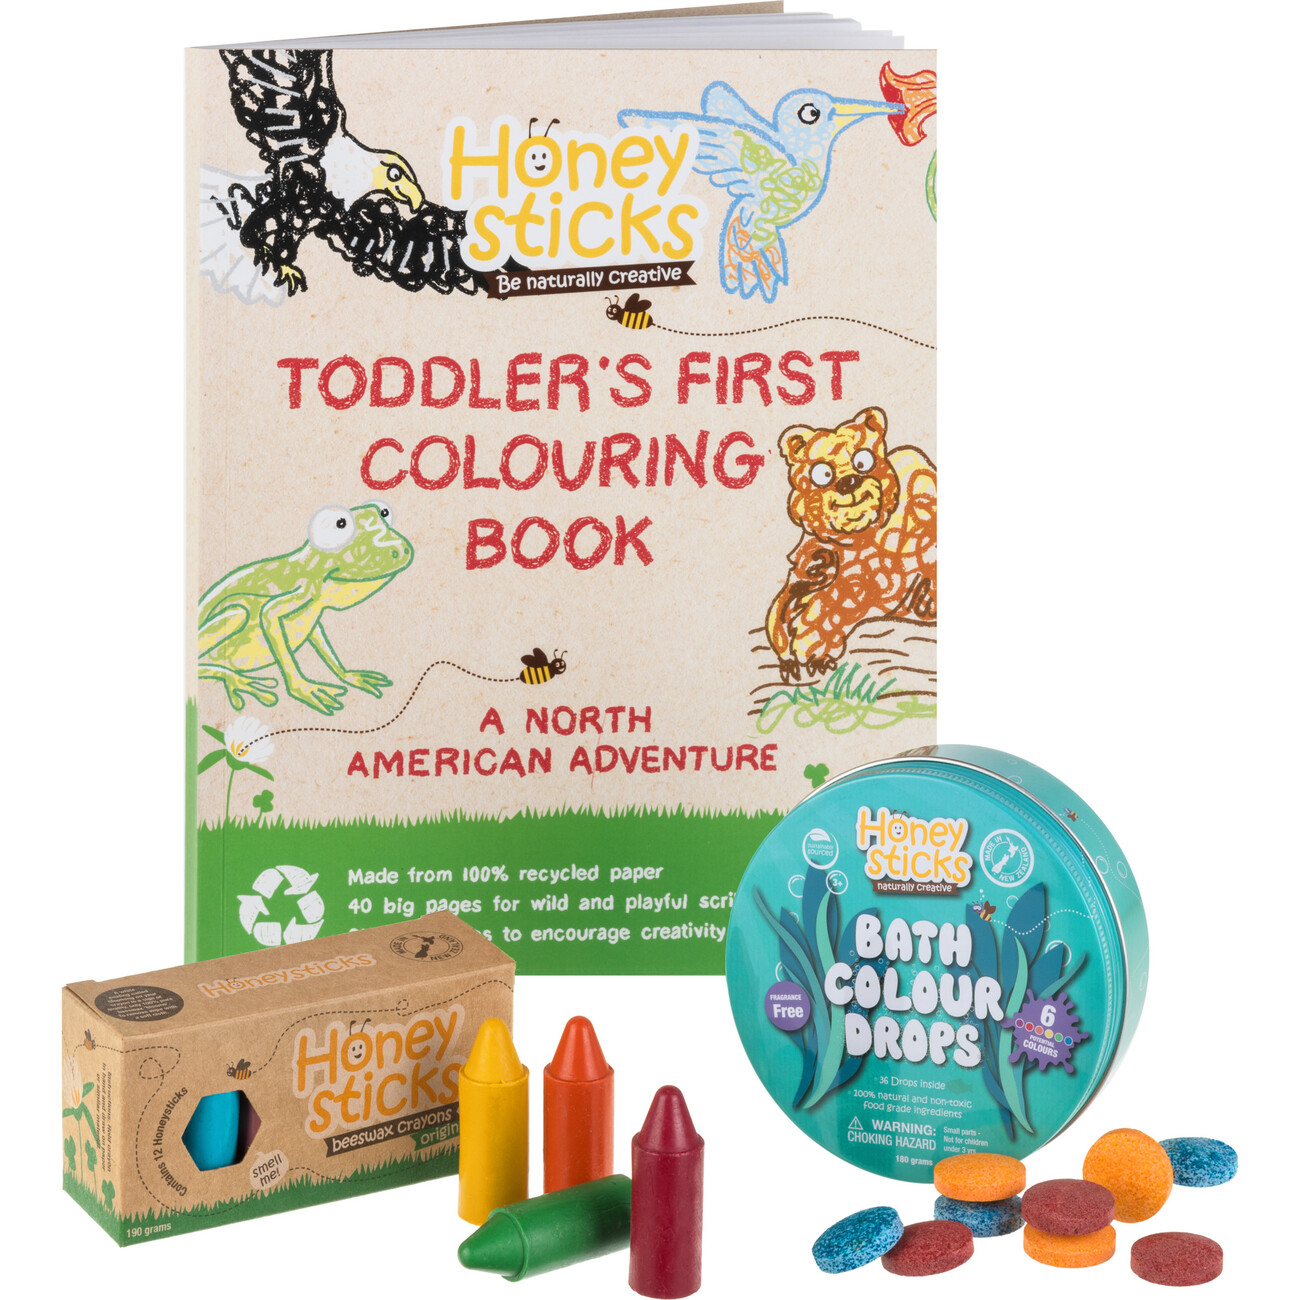 Honeysticks 100% Pure Beeswax Crayons Natural, Non Toxic, Safe